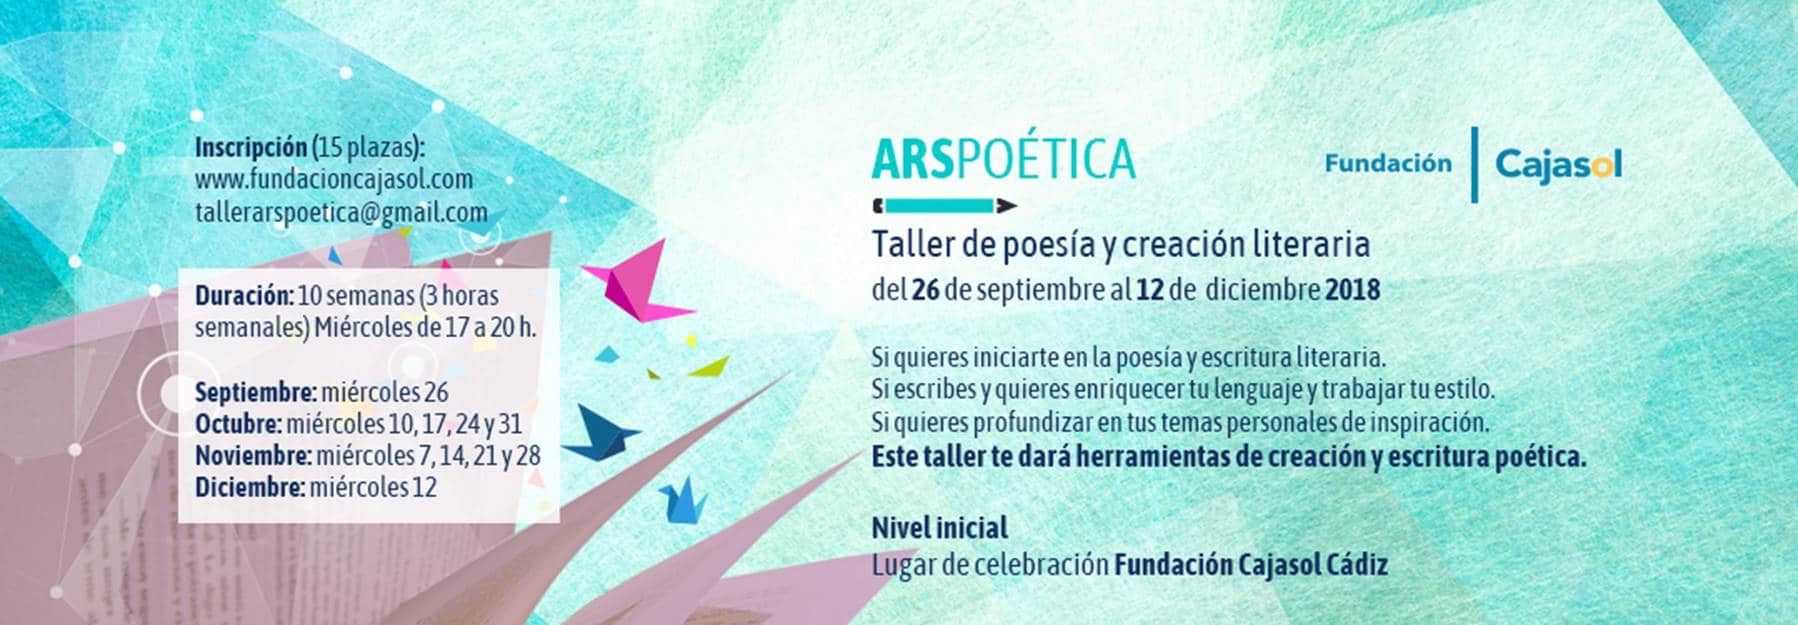 Cartel de taller Ars Poética para otoño 2018 en Cádiz